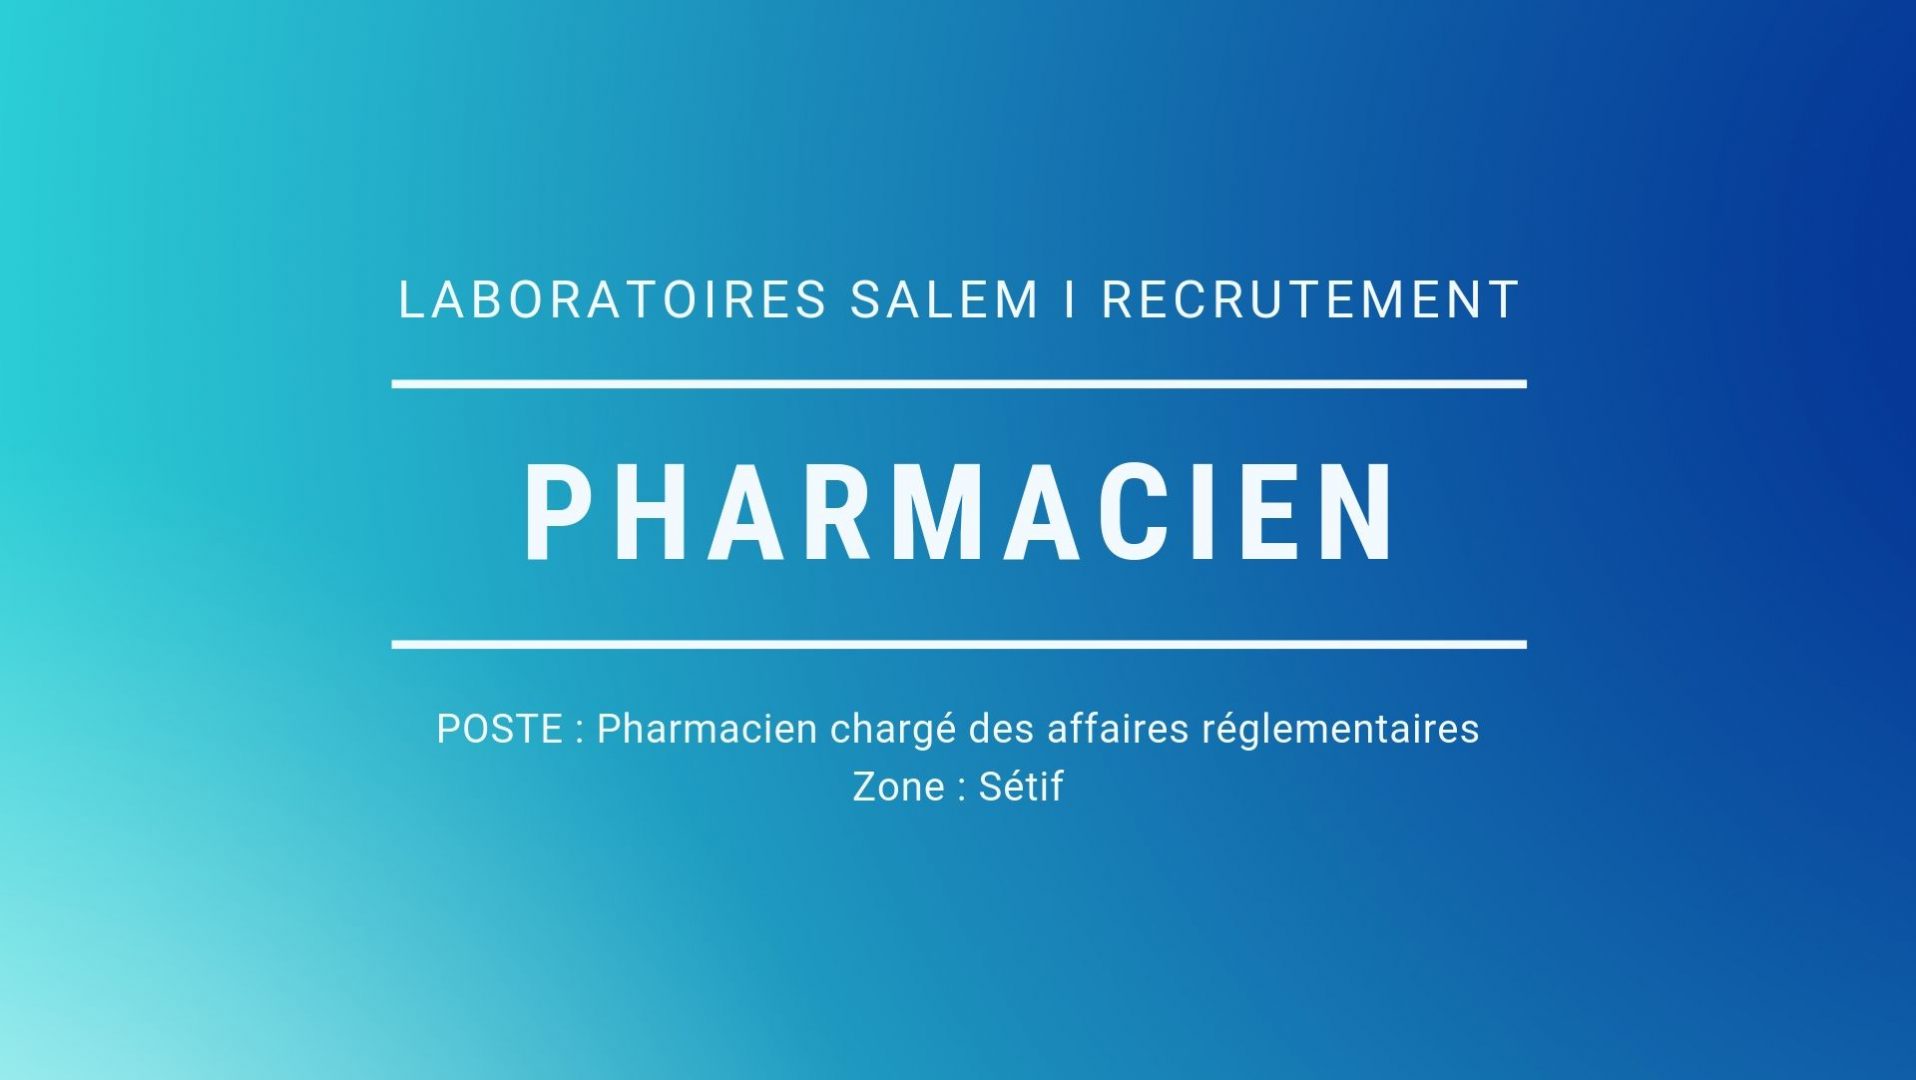 You are currently viewing Offre d’emploi, un pharmacien chargé des affaires réglementaires​